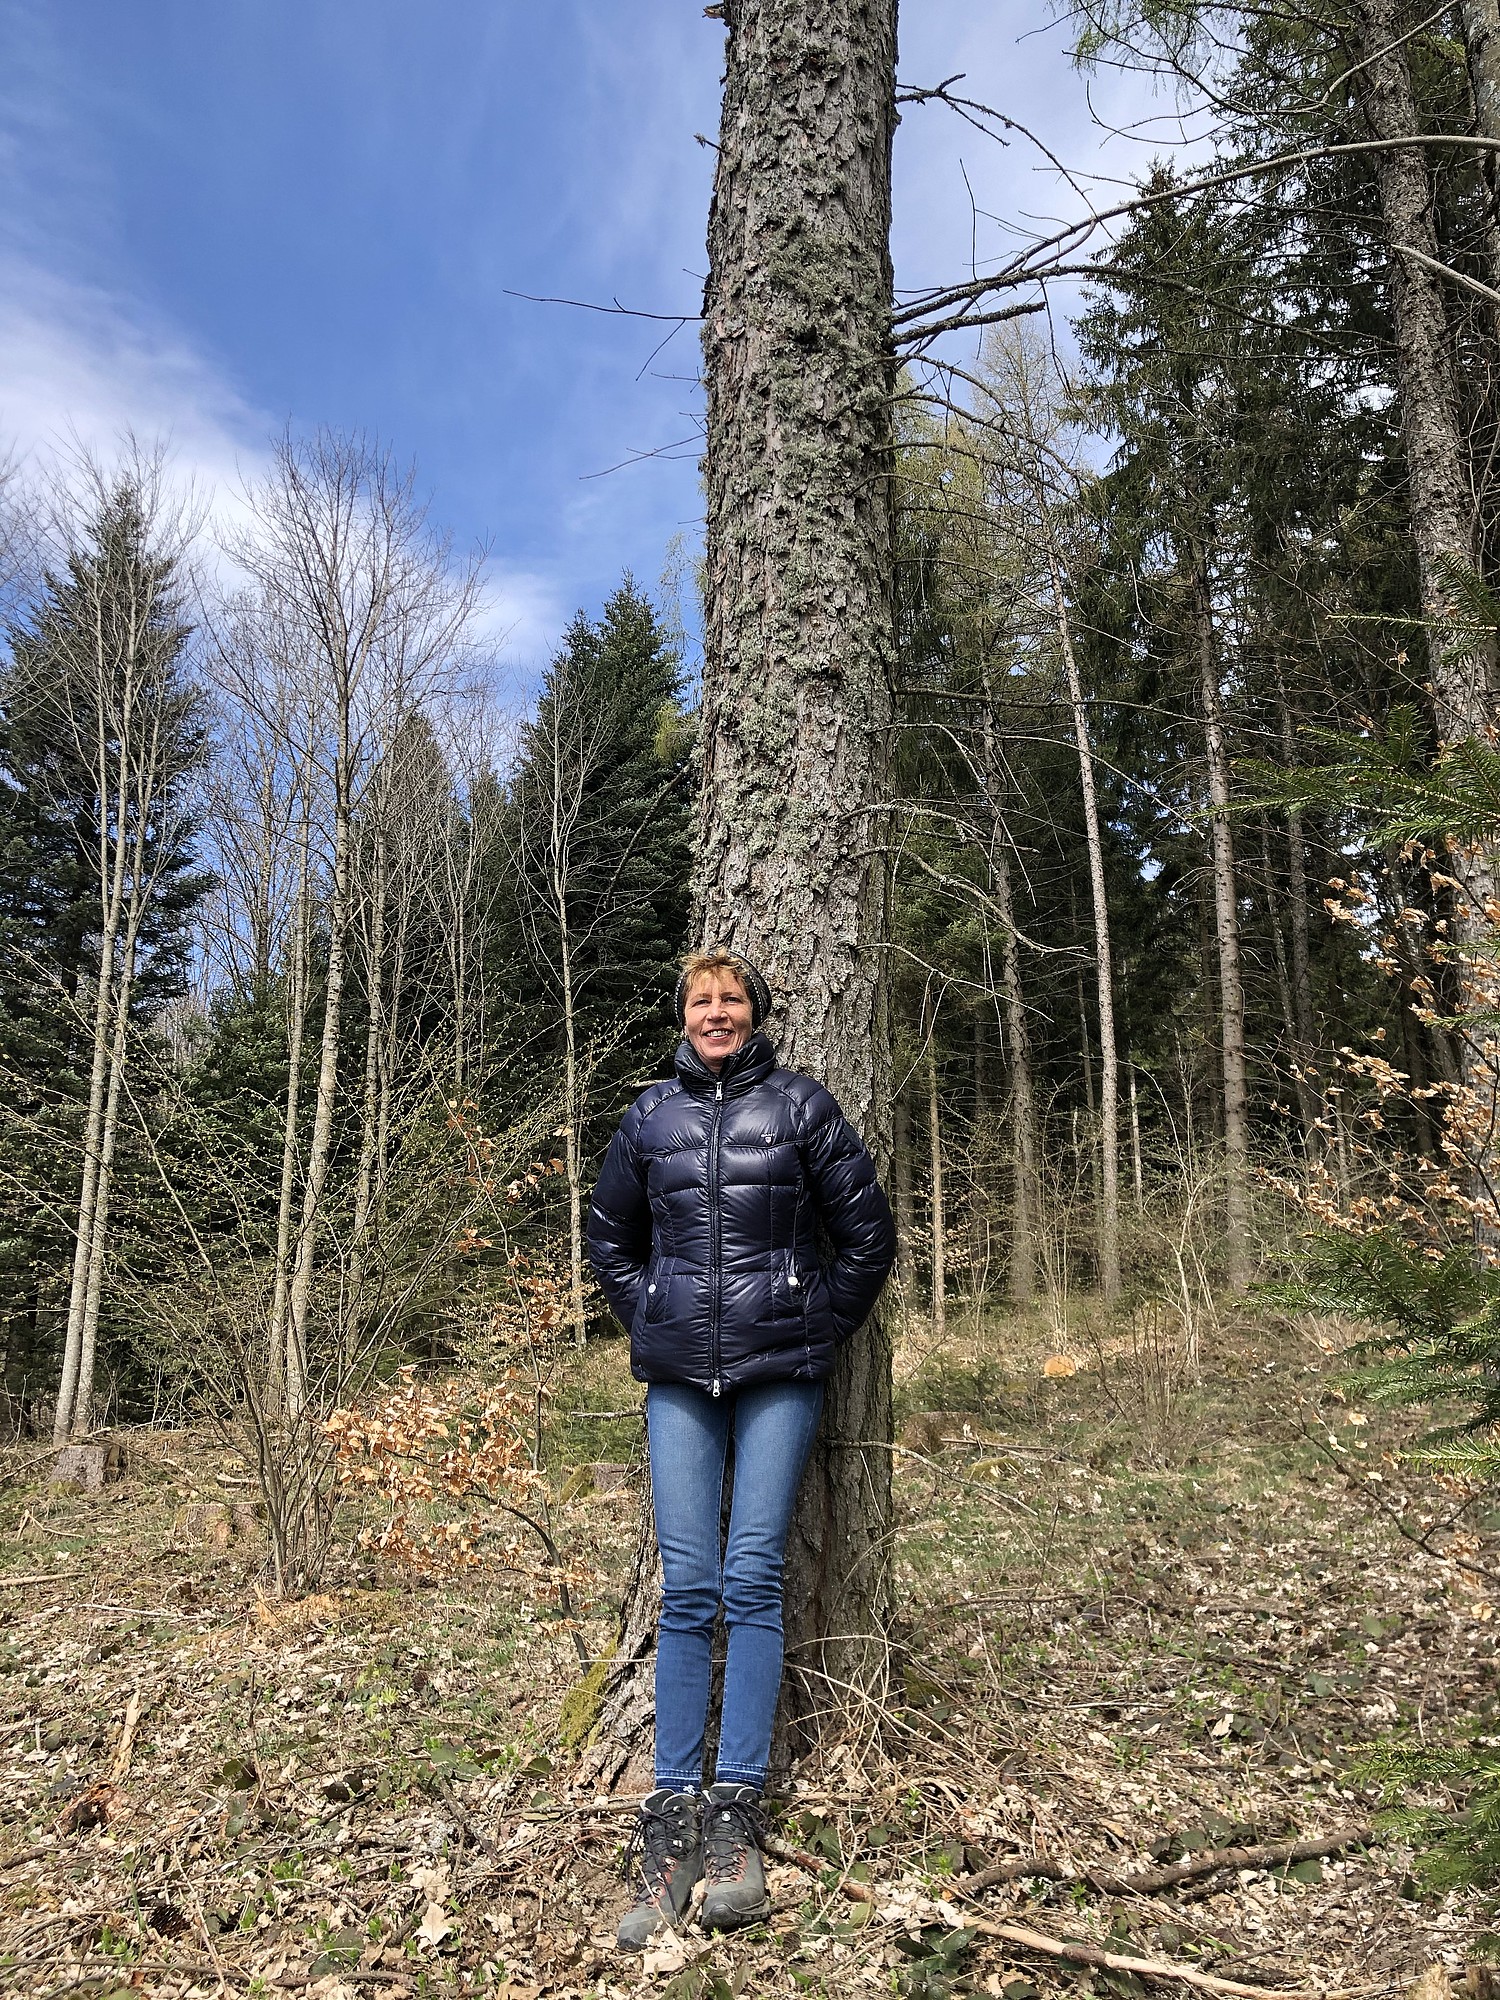 Eine Gemeindepräsidentin setzt sich für einen nachhaltig bewirtschafteten Wald ein: Valérie Jeanrenaud, Gemeindepräsidentin im Waadtländischen Burtigny, sieht im Wald viel Potenzial für mehr Lebensqualität.